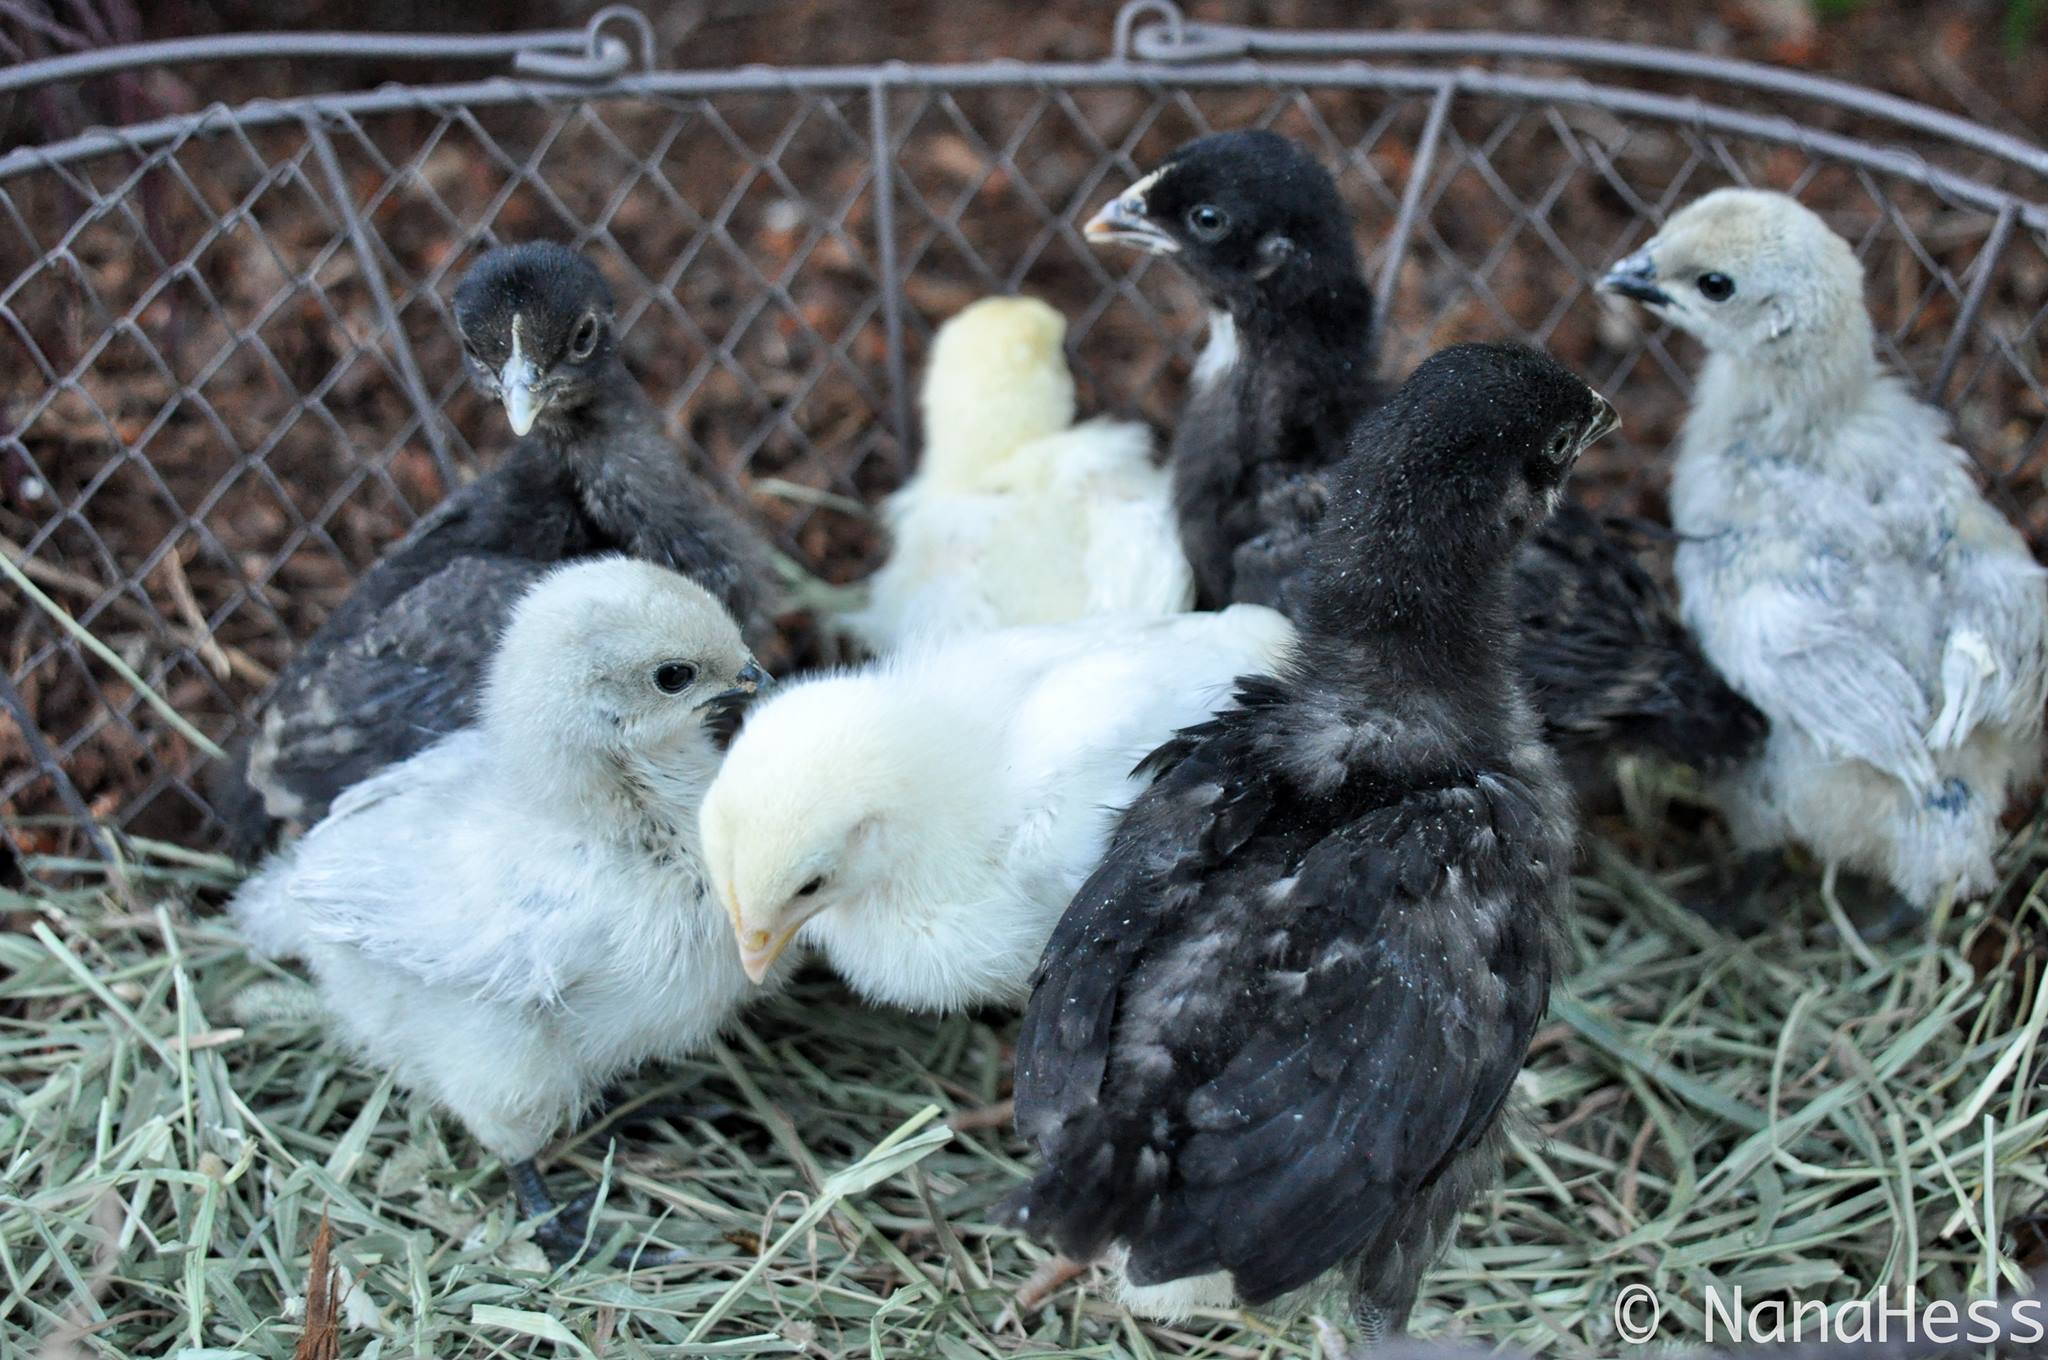 Hedemora chicks